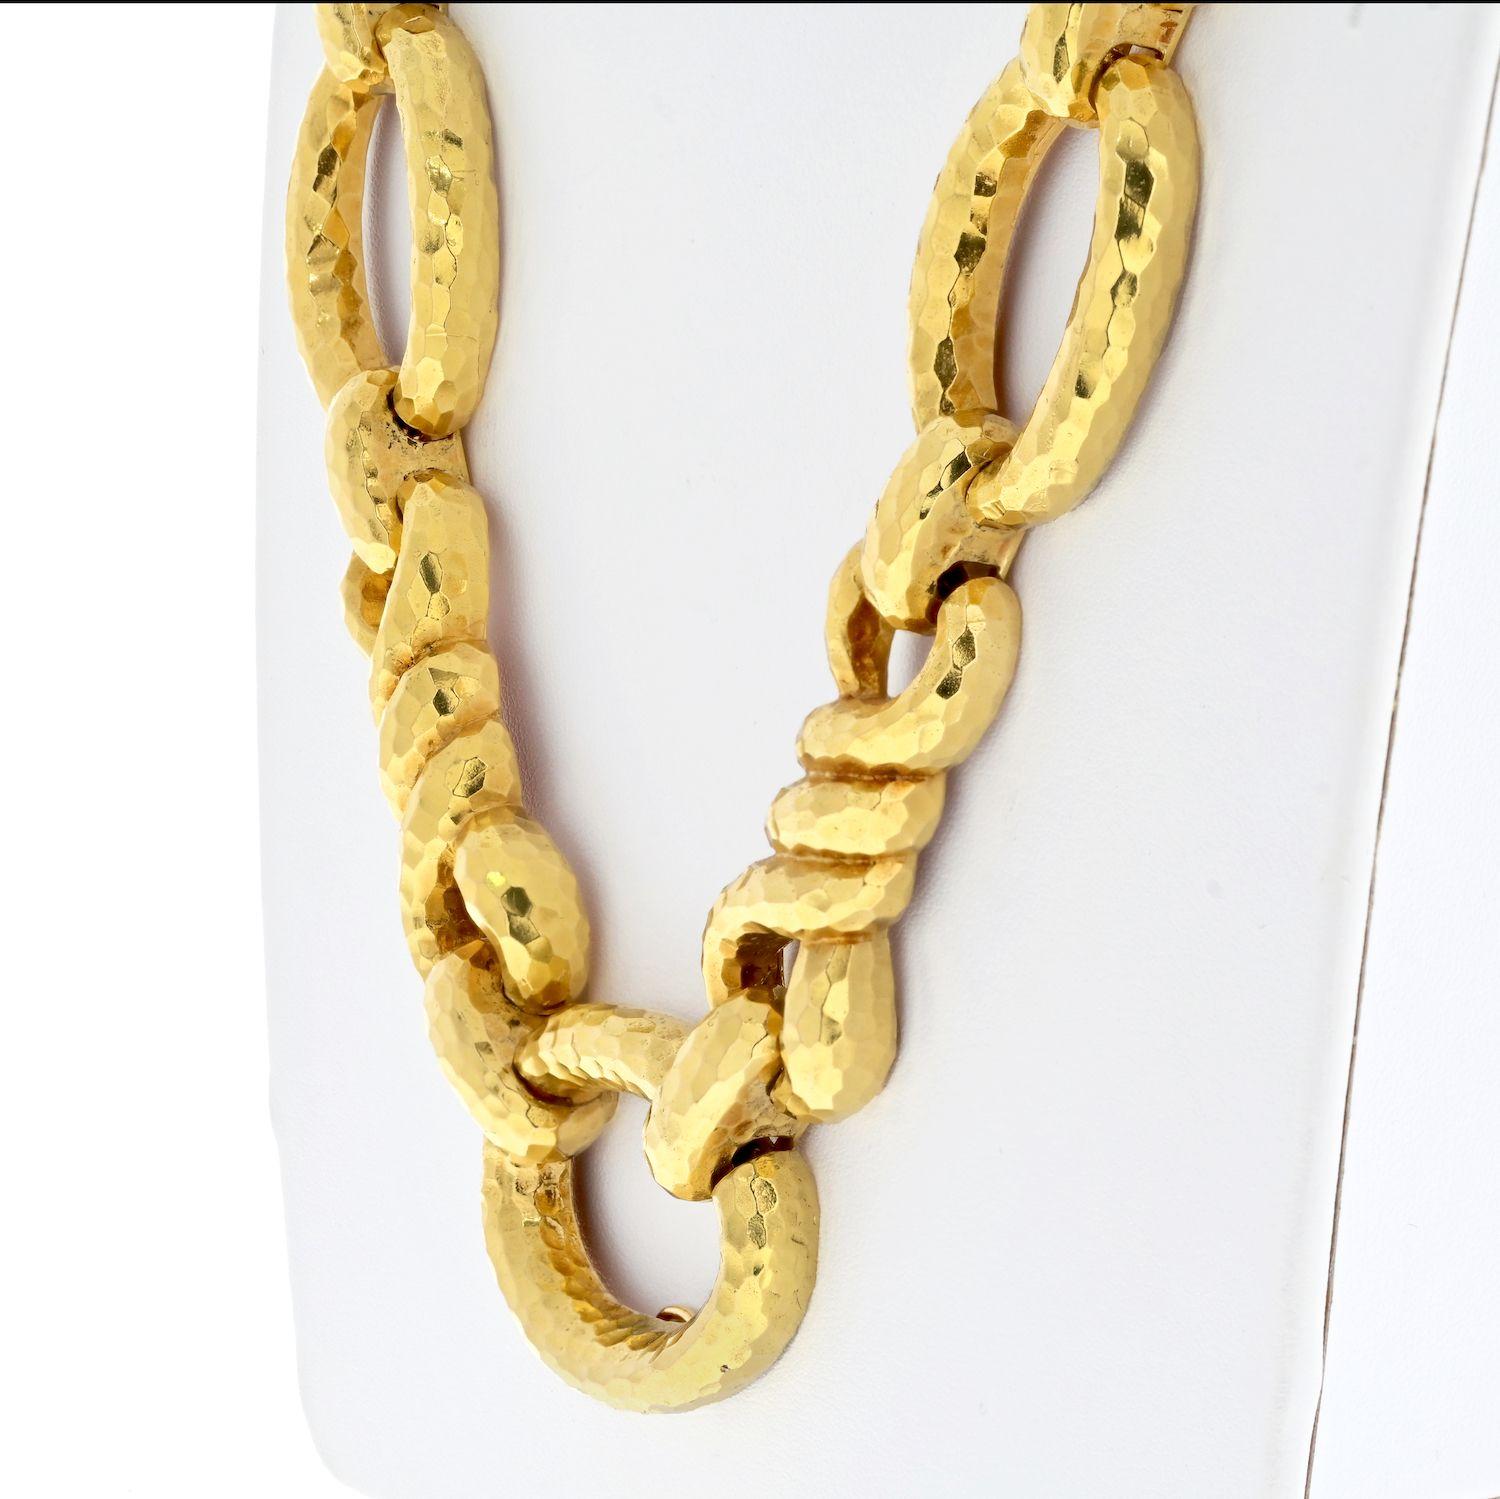 Wir stellen Ihnen ein bemerkenswertes Schmuckstück des angesehenen Designers David Webb vor: die 18-karätige Gliederkette aus Gelbgold. Diese Halskette besticht durch eine Mischung aus Eleganz und modernem Flair und ist ein echtes Statement. Die aus